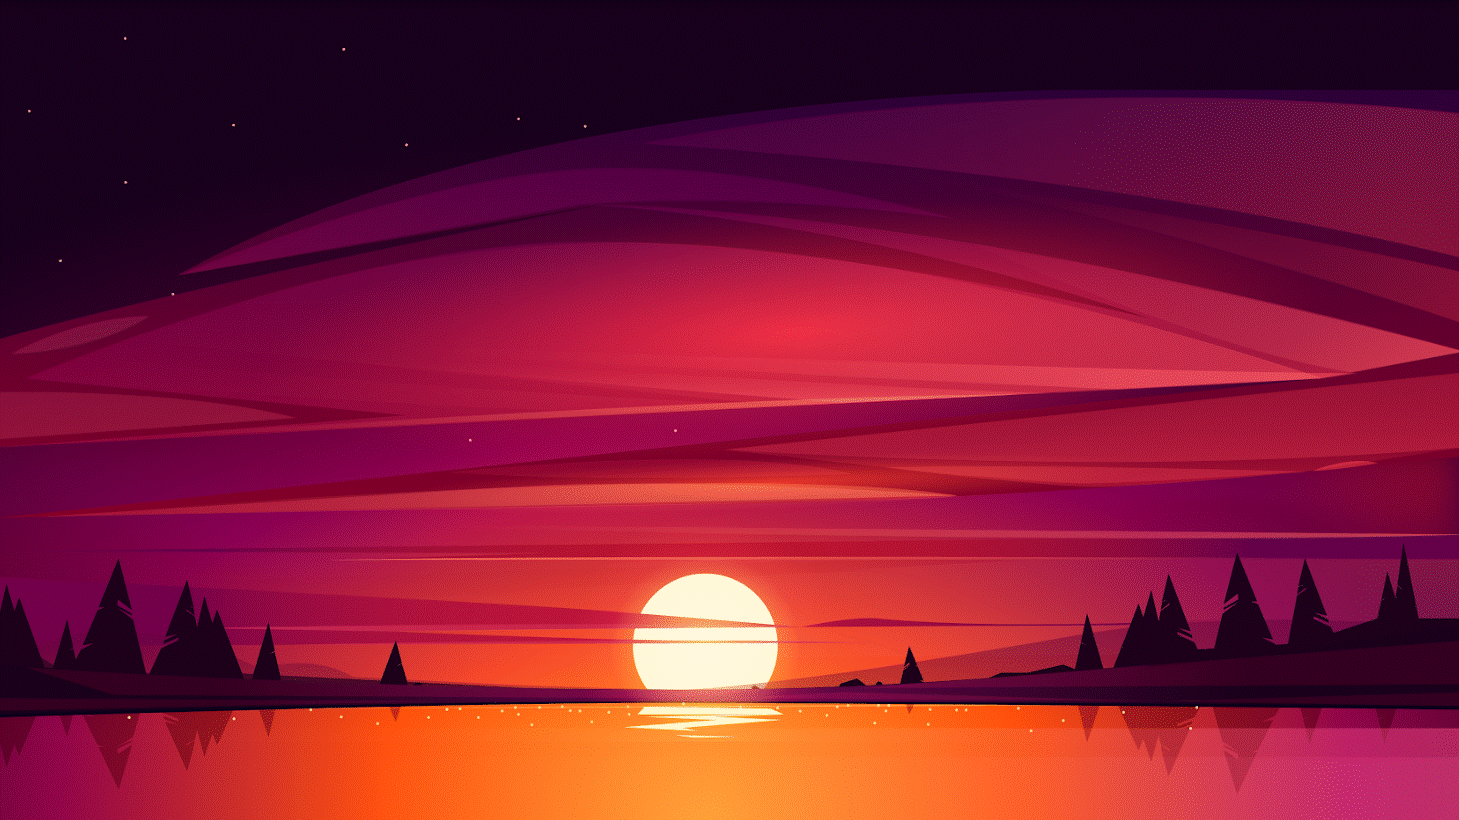 Background Wallpaper 4K for PC - Sunset